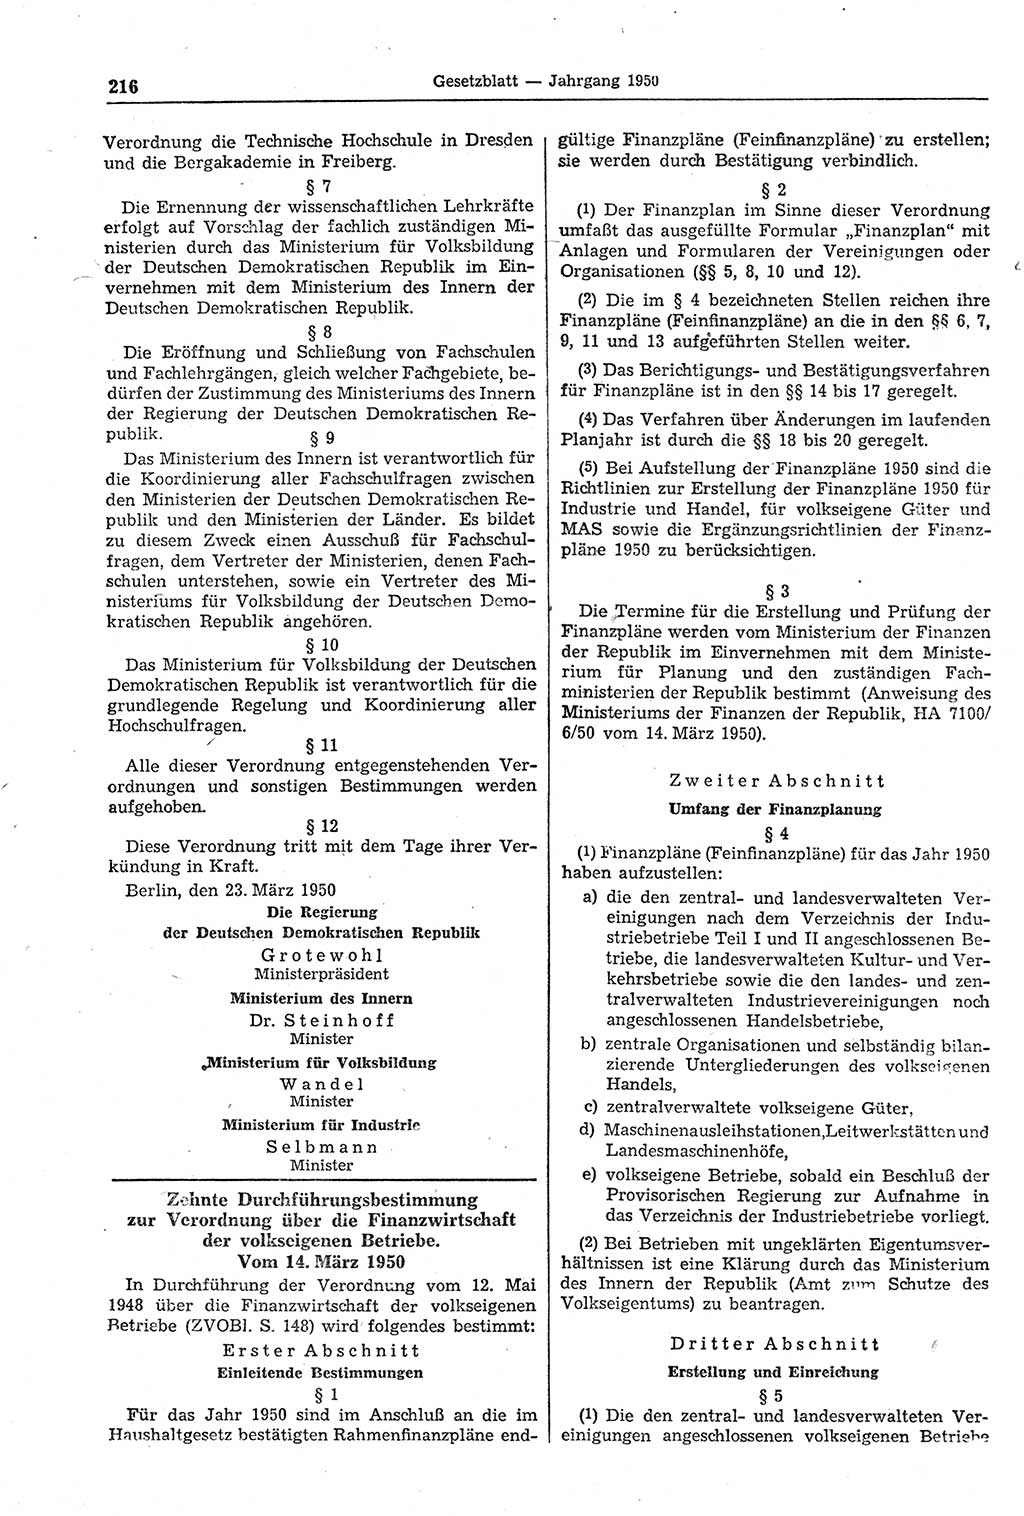 Gesetzblatt (GBl.) der Deutschen Demokratischen Republik (DDR) 1950, Seite 216 (GBl. DDR 1950, S. 216)